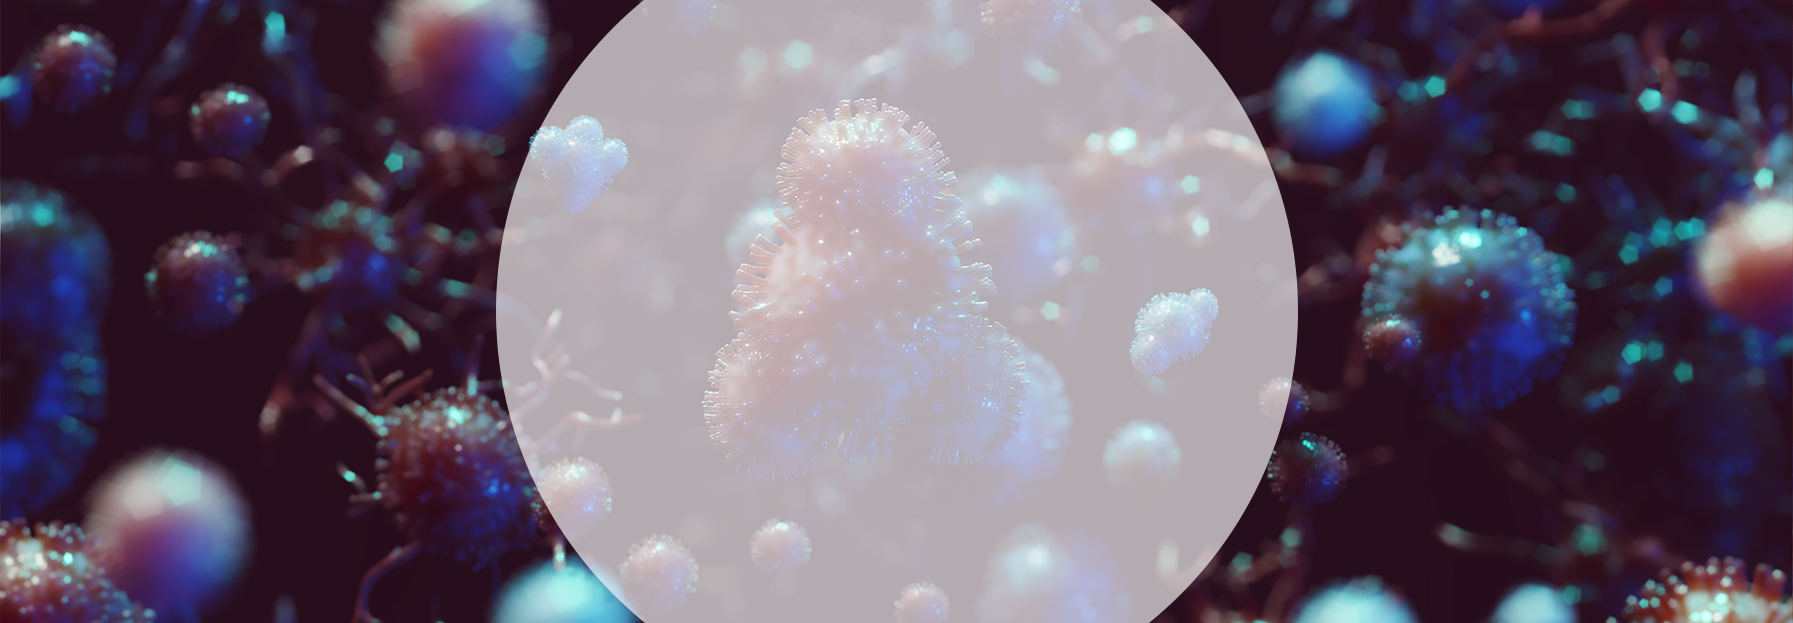 Coronavirus bacteria close-up